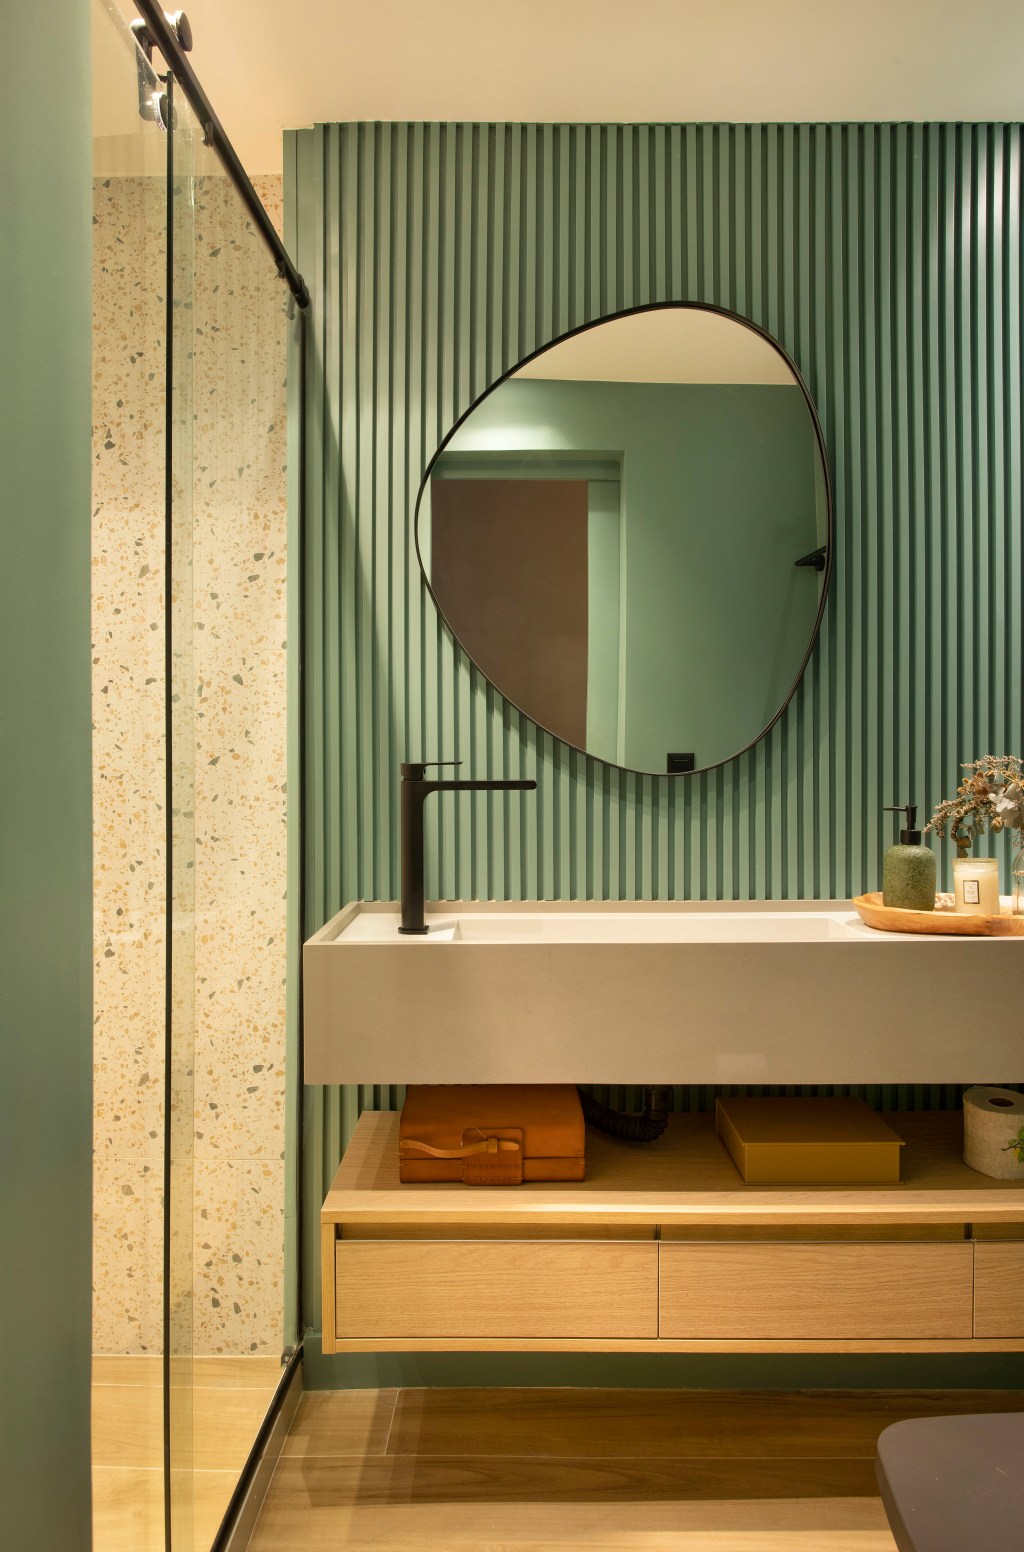 Apê 160 m2 cara de casa paleta verde rosa néons up3 arquitetura decoração sala banheiro verde espelho box ripado